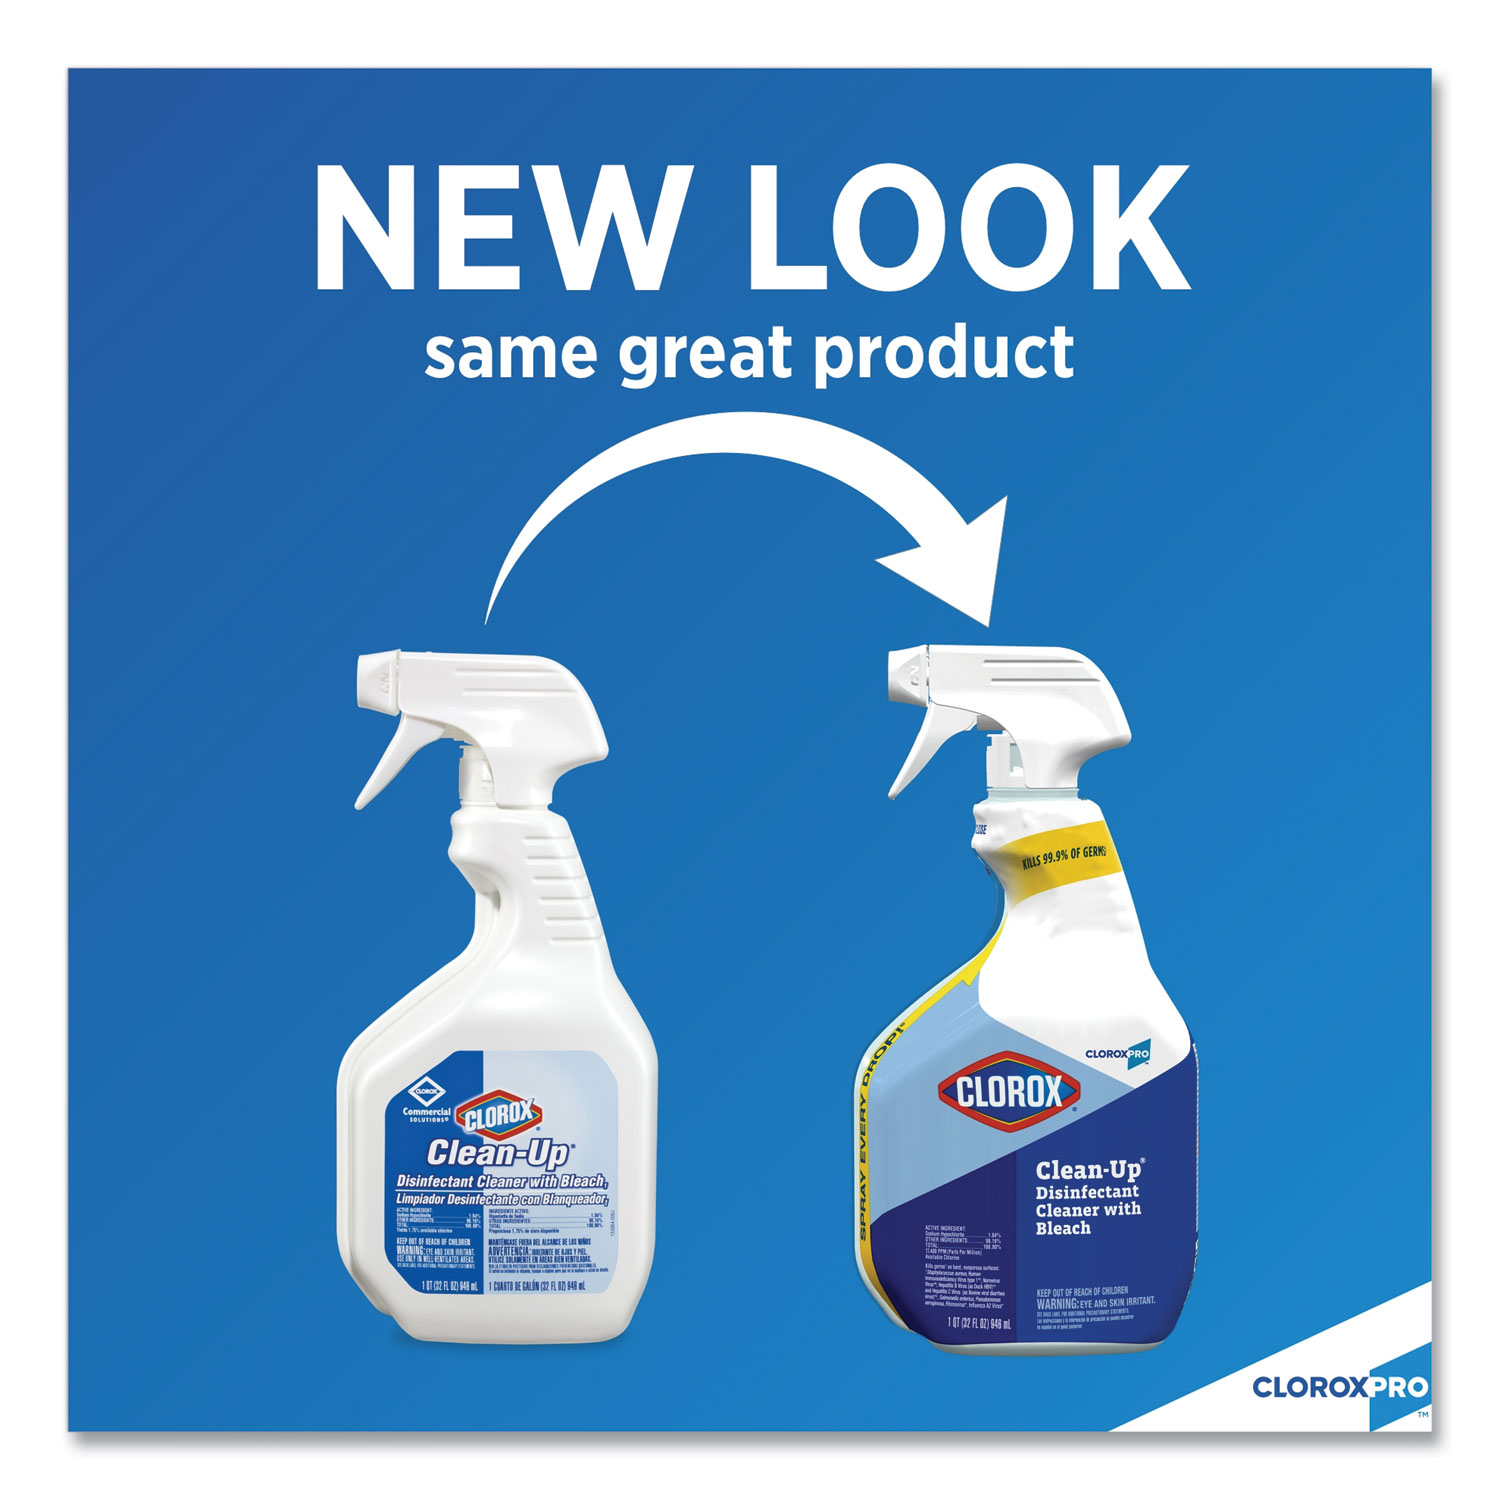 Clorox Clean-Up Fresh Cleaner & Bleach Spray